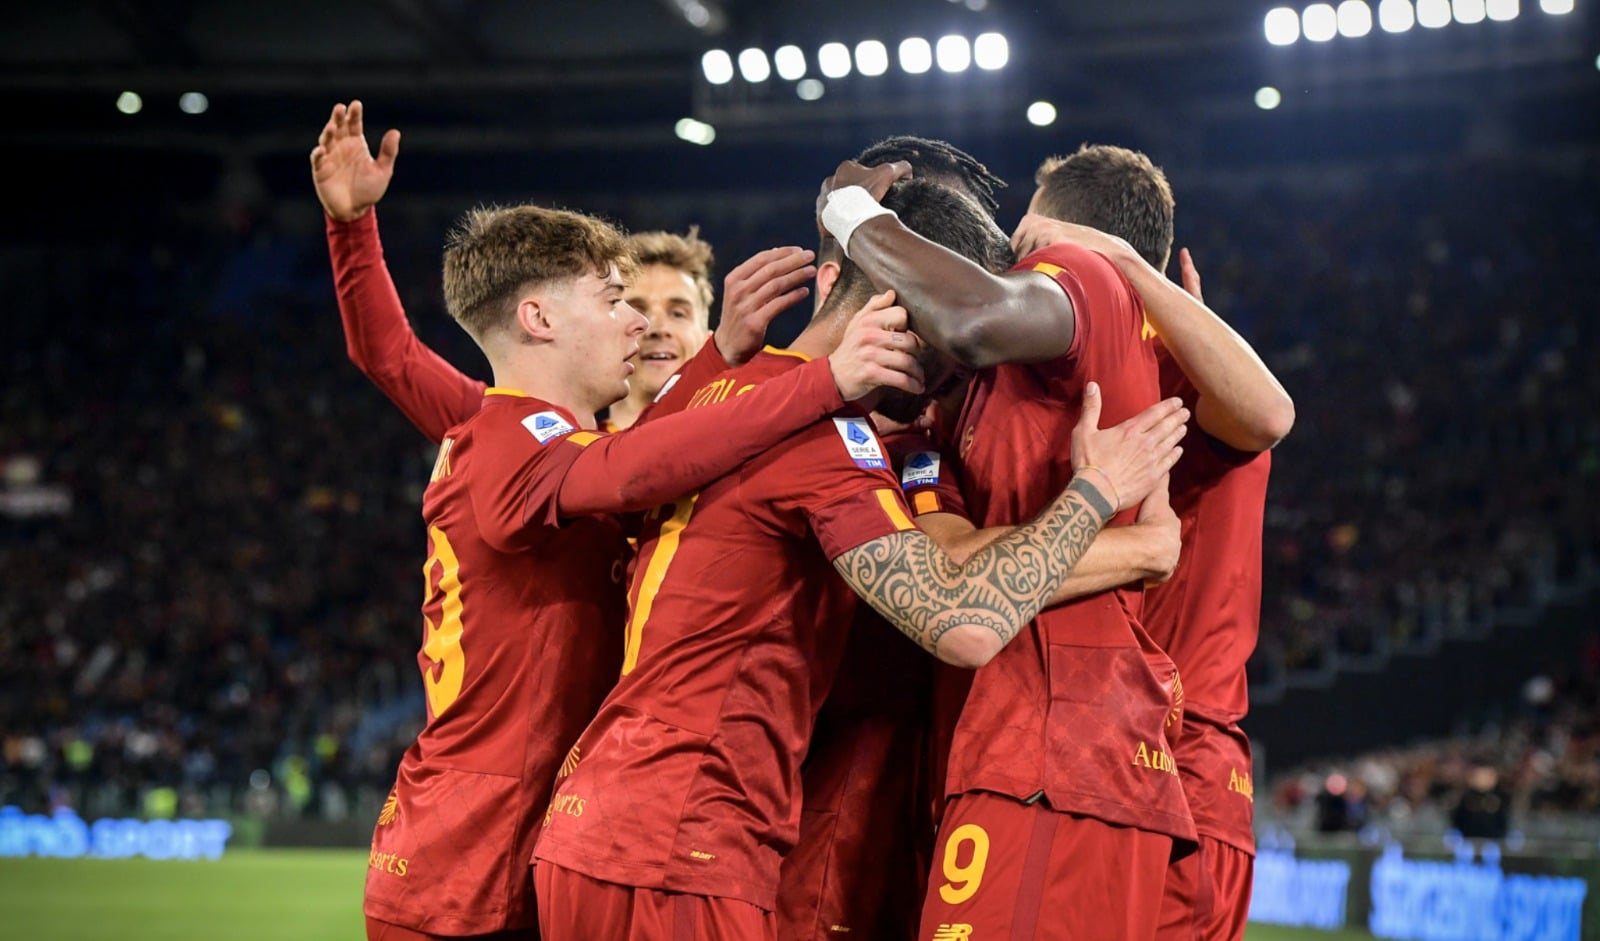 AS Roma – Salernitana : Les équipes officielles sont tombées